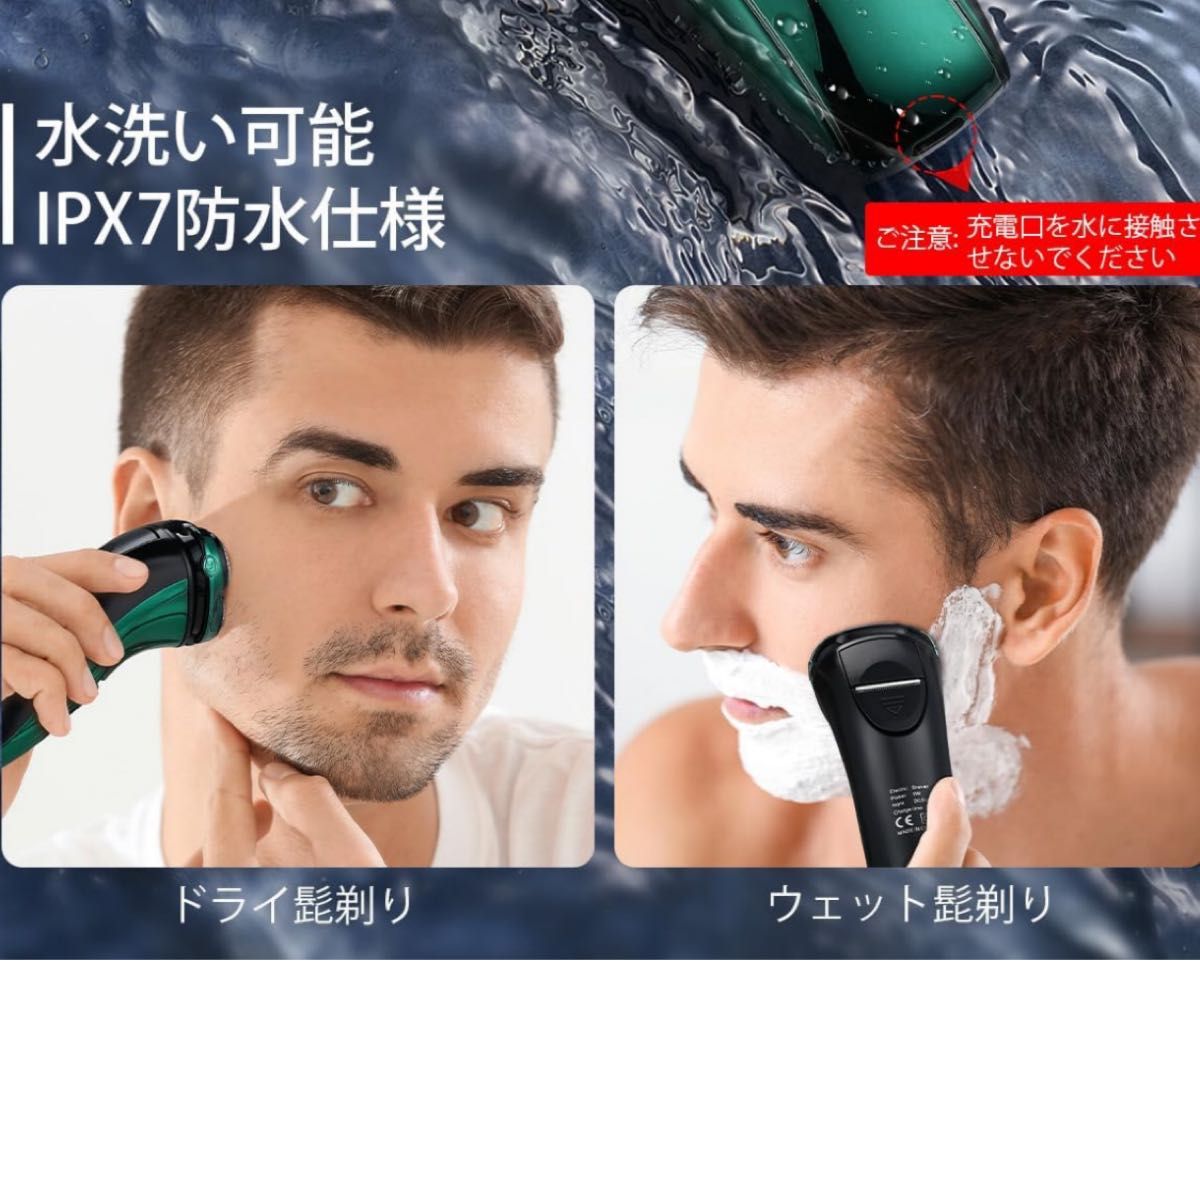 髭剃り 電気シェーバー USB急速充電 回転式 電動シェーバー 深剃り 電動 低騒音 シェーバー 防水 水洗い可能